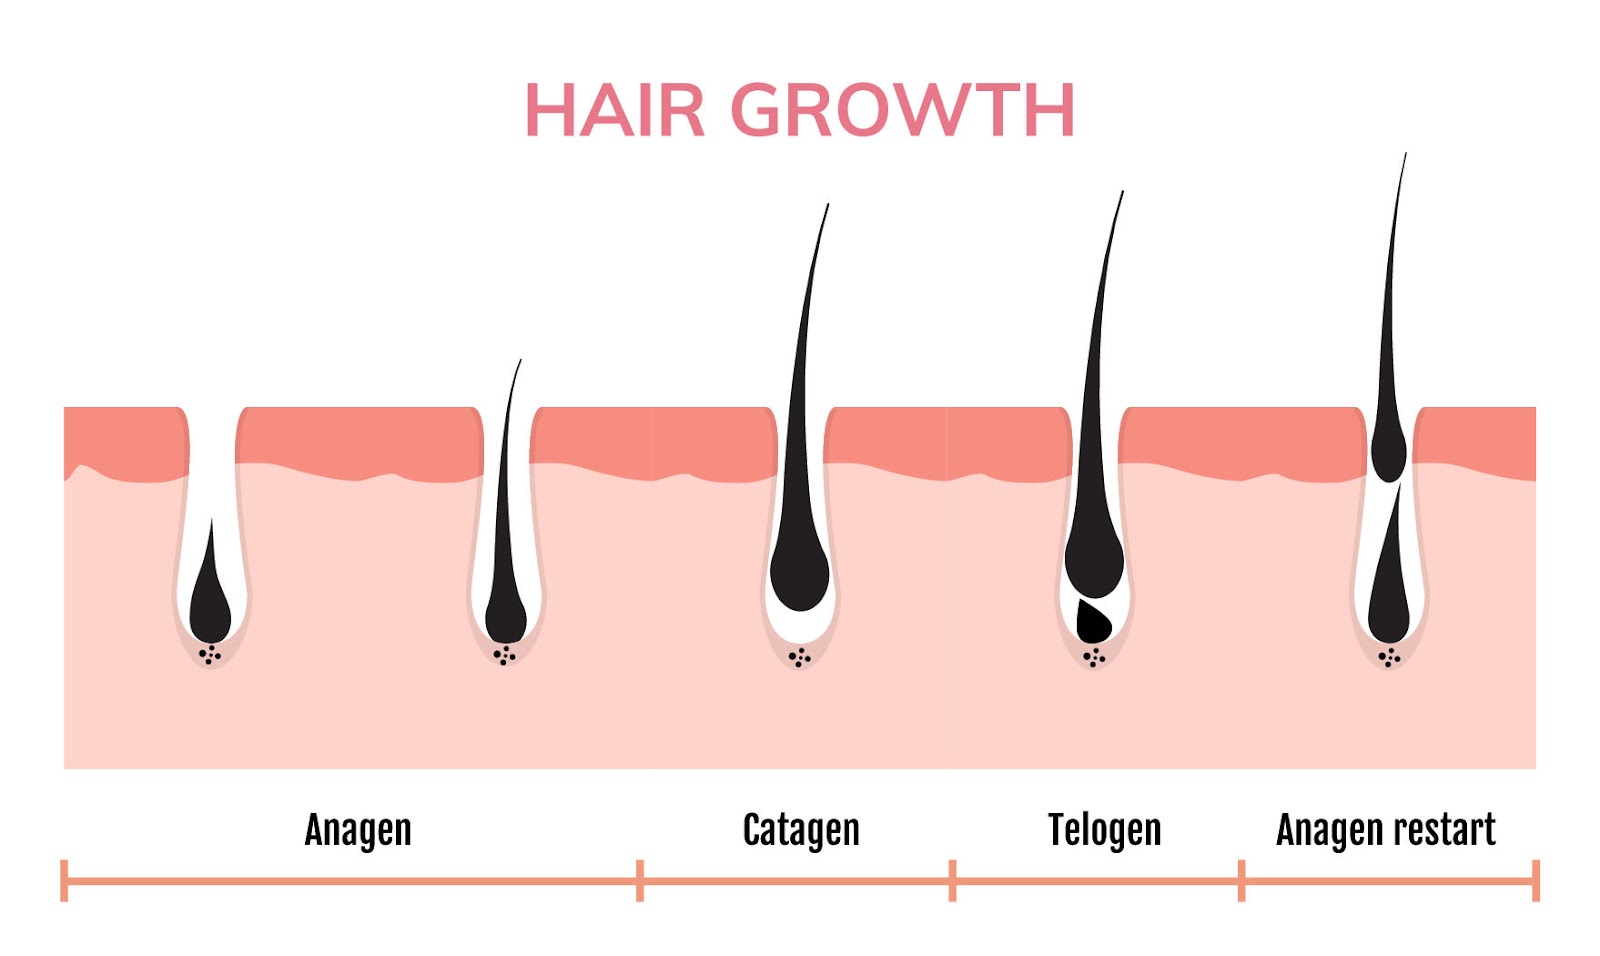 مراحل نمو الشعر وإحياء بصيلات الشعر الميتة